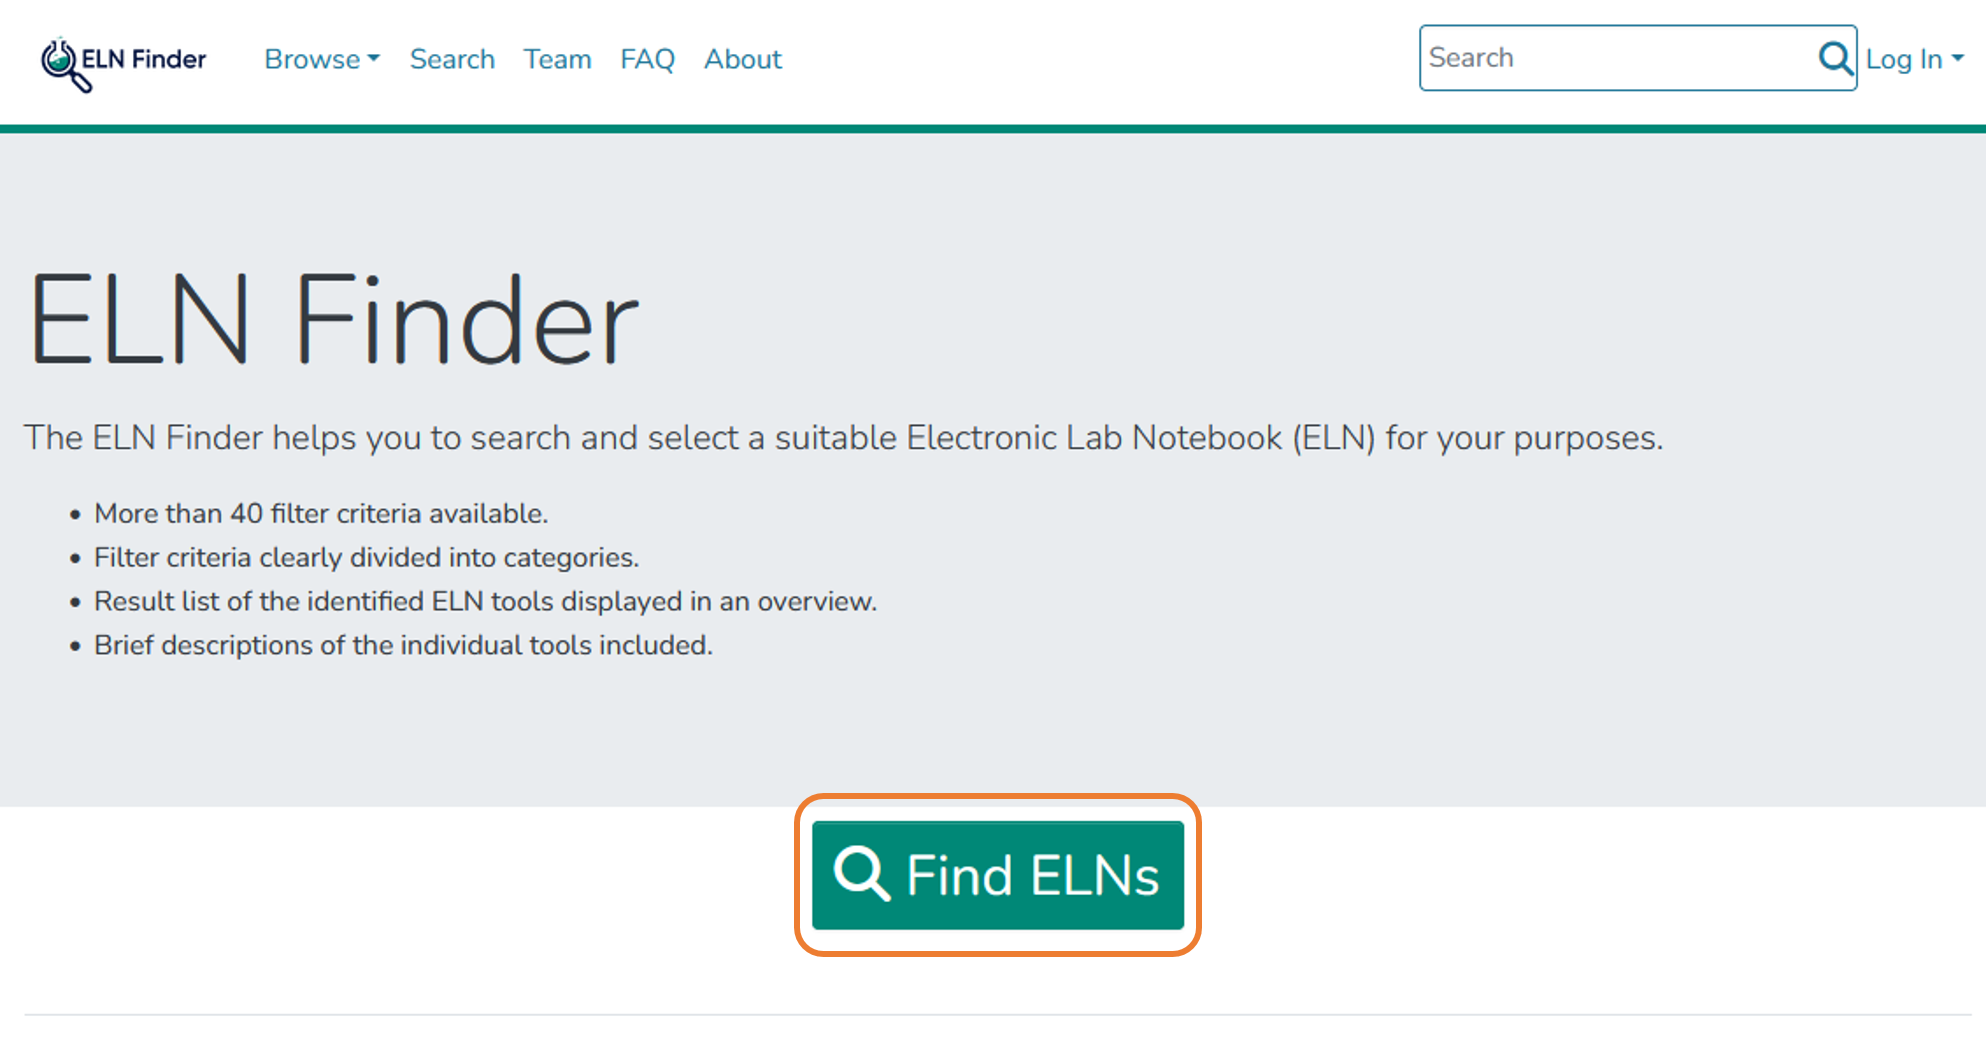 Hands on: ELN Finder: Click on "Find ELNs"